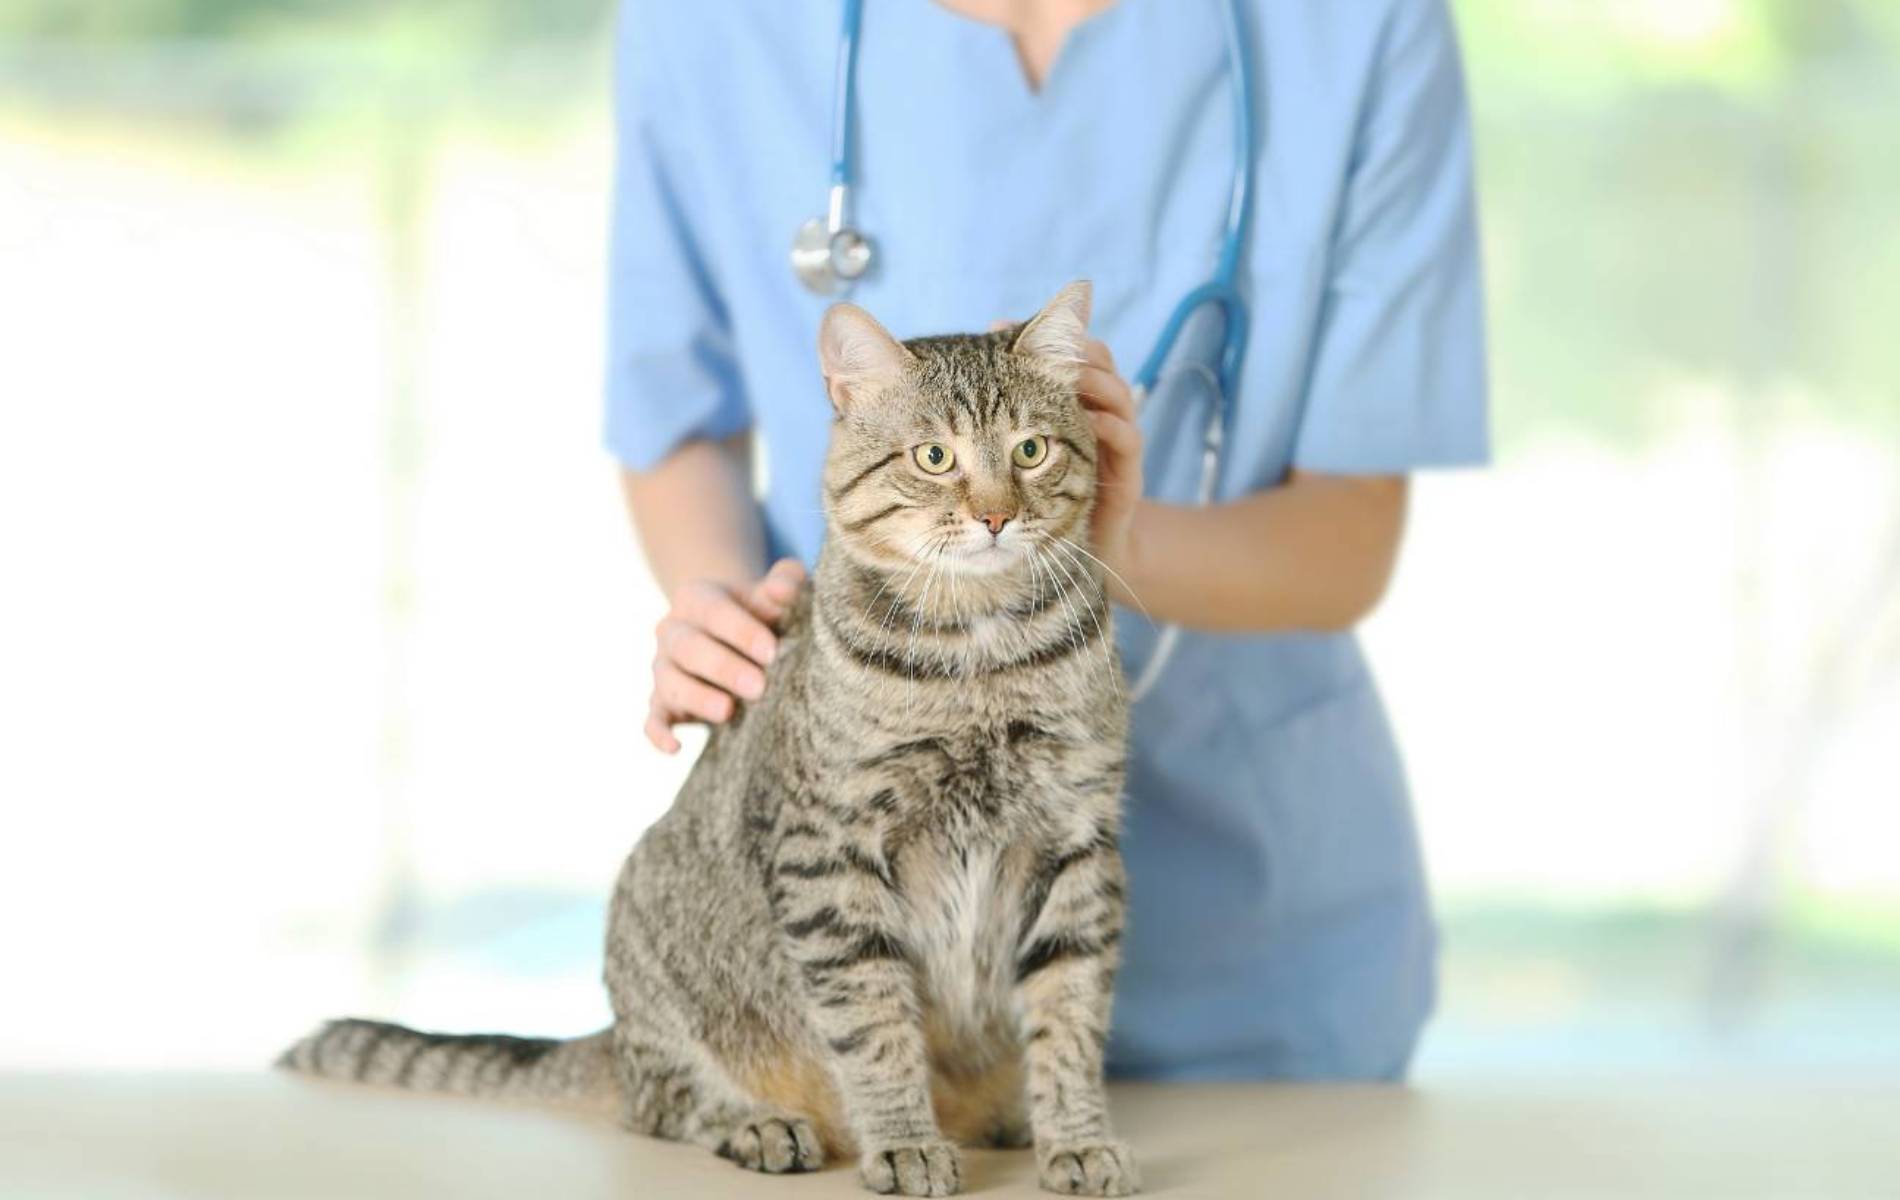 A person in scrubs petting a cat